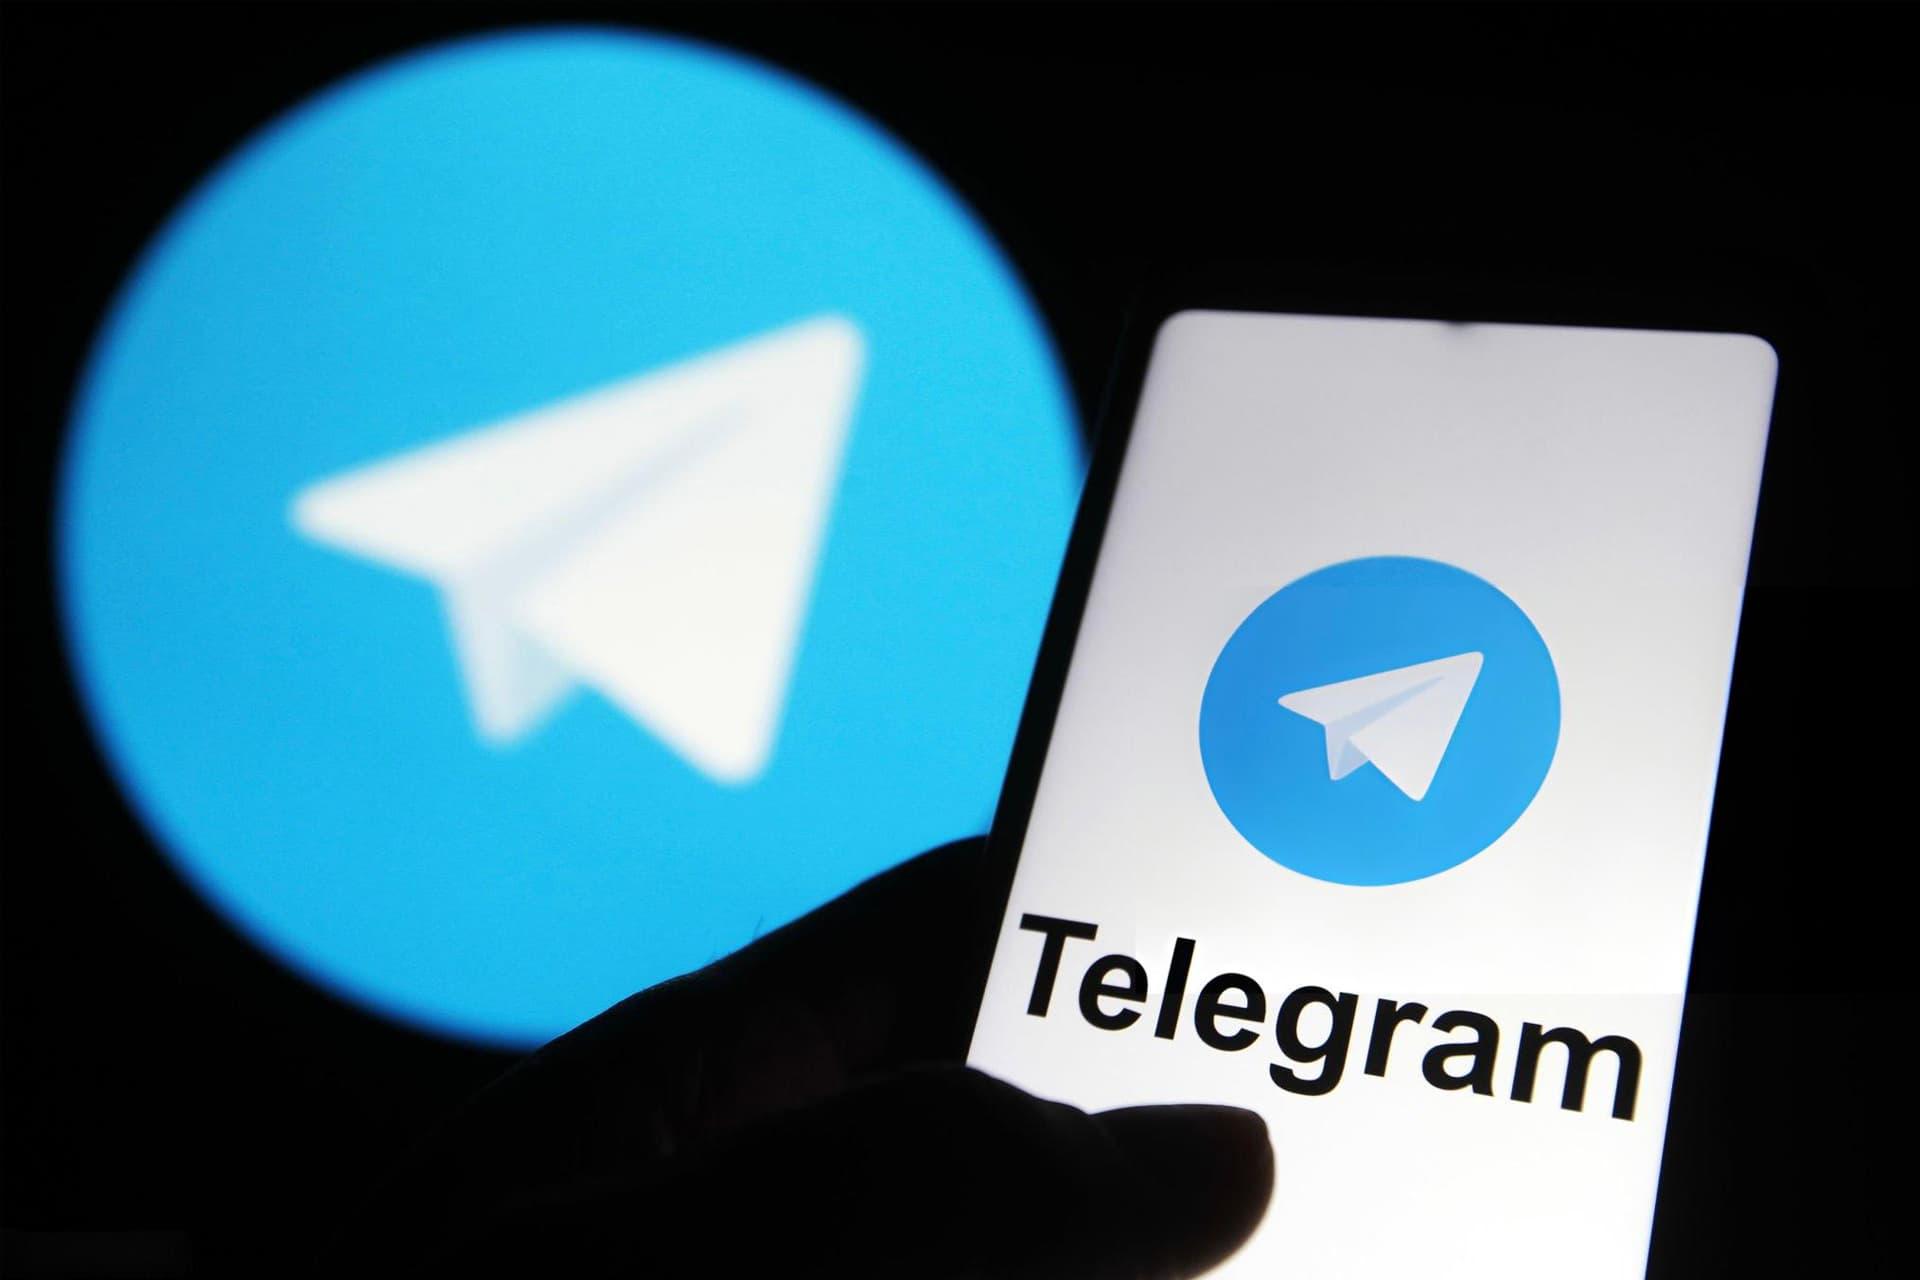 لوگو تلگرام / Telegram در داخل گوشی و پس زمینه مشکی و آبی